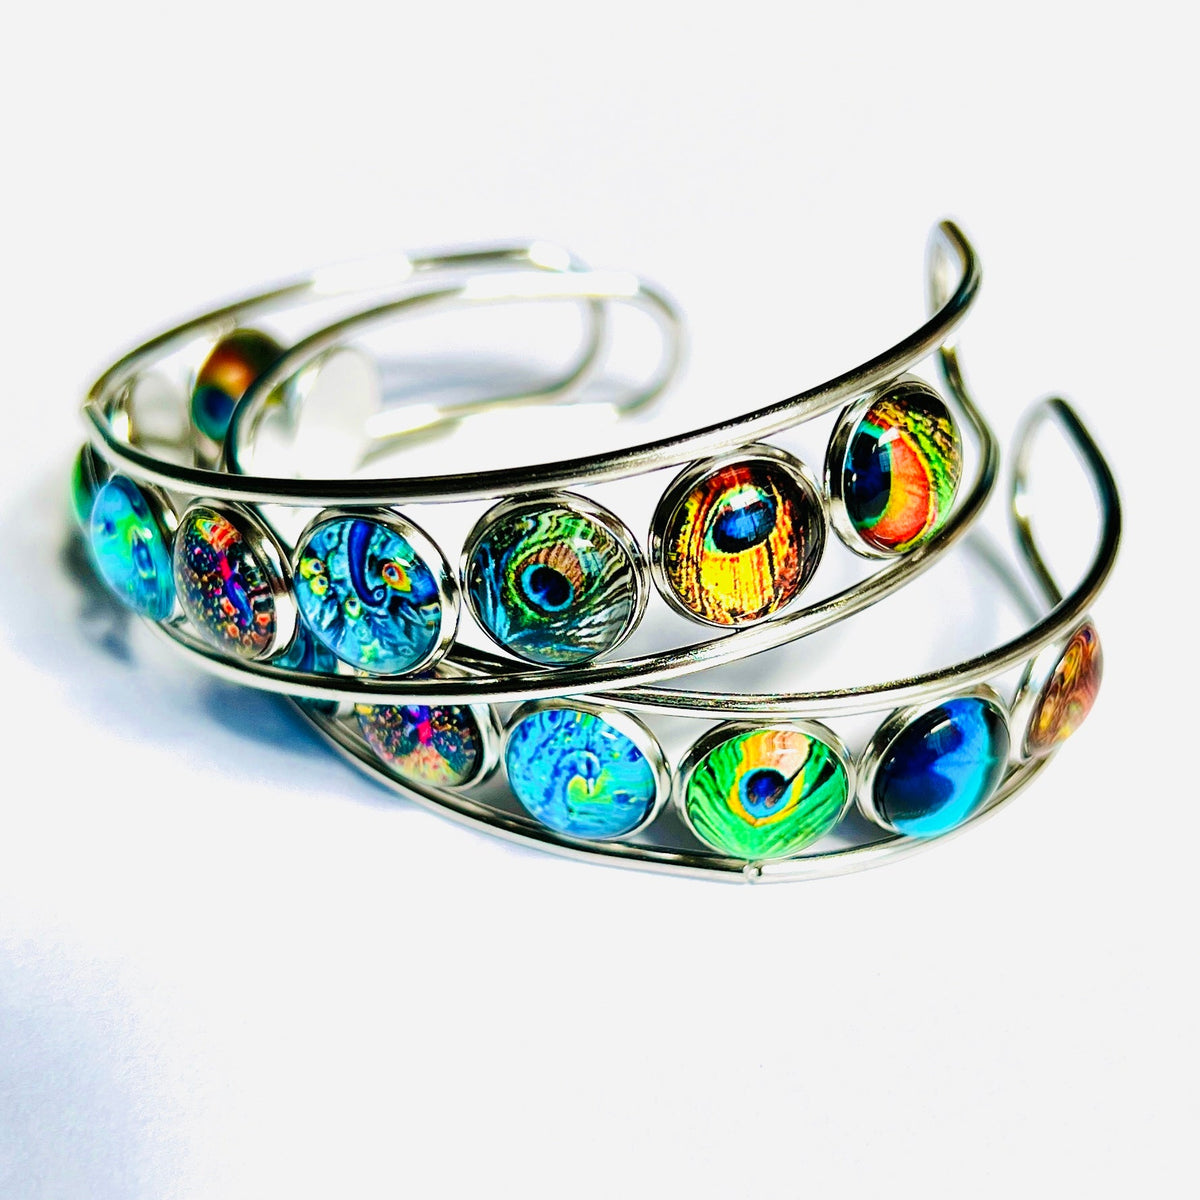 Artistic Cuff Bracelet Jewelry - 